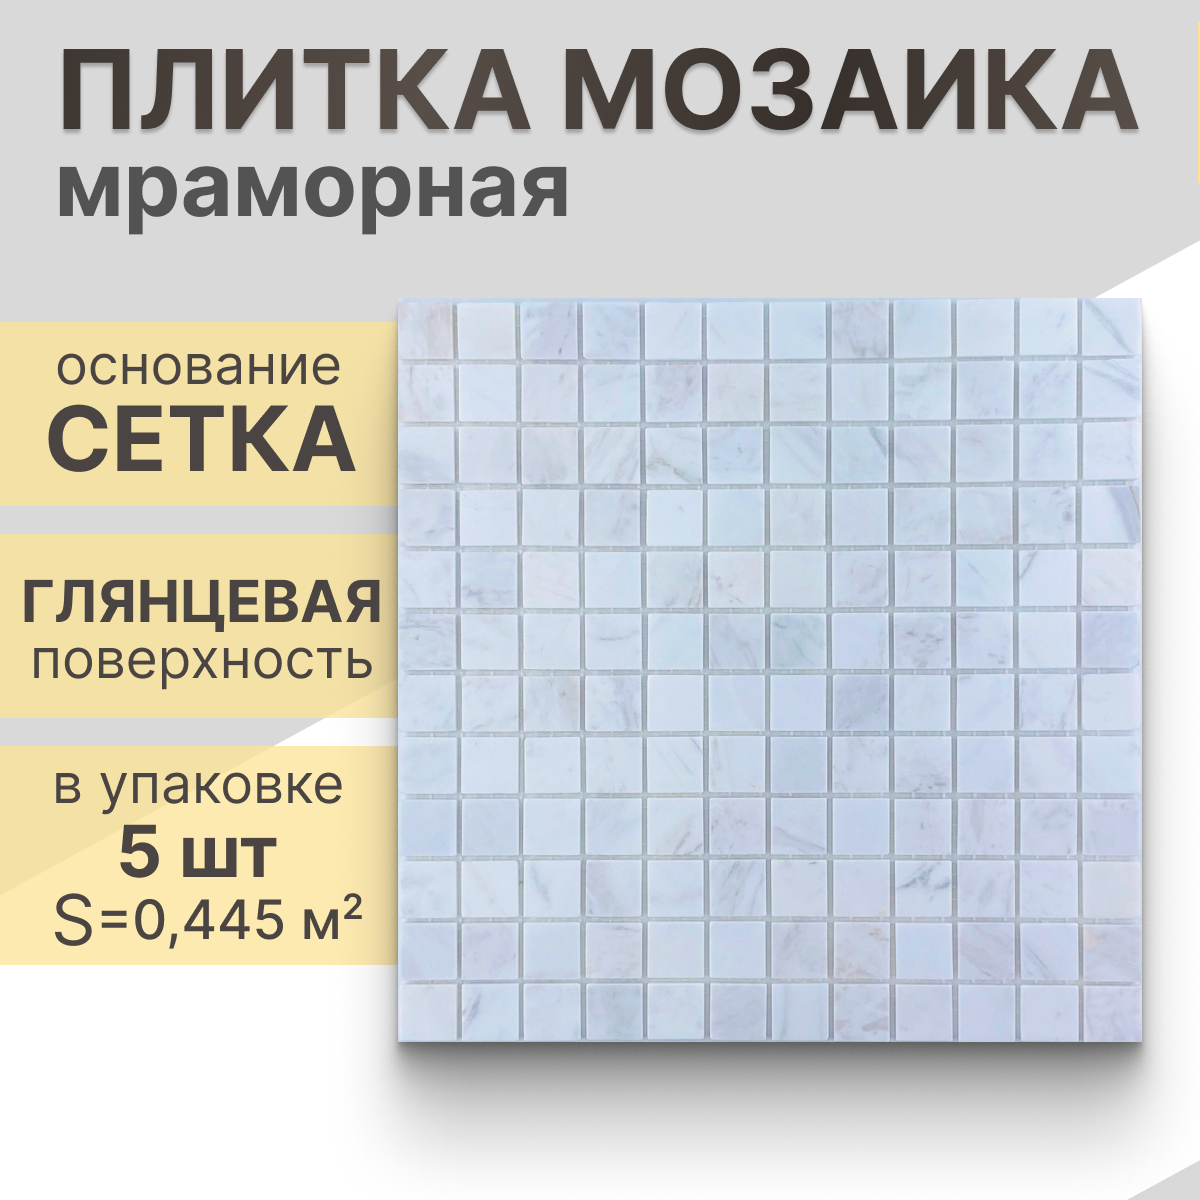 Мозаика (мрамор) NS mosaic K-733 29,8x29,8 см 5 шт (0,445 м²)